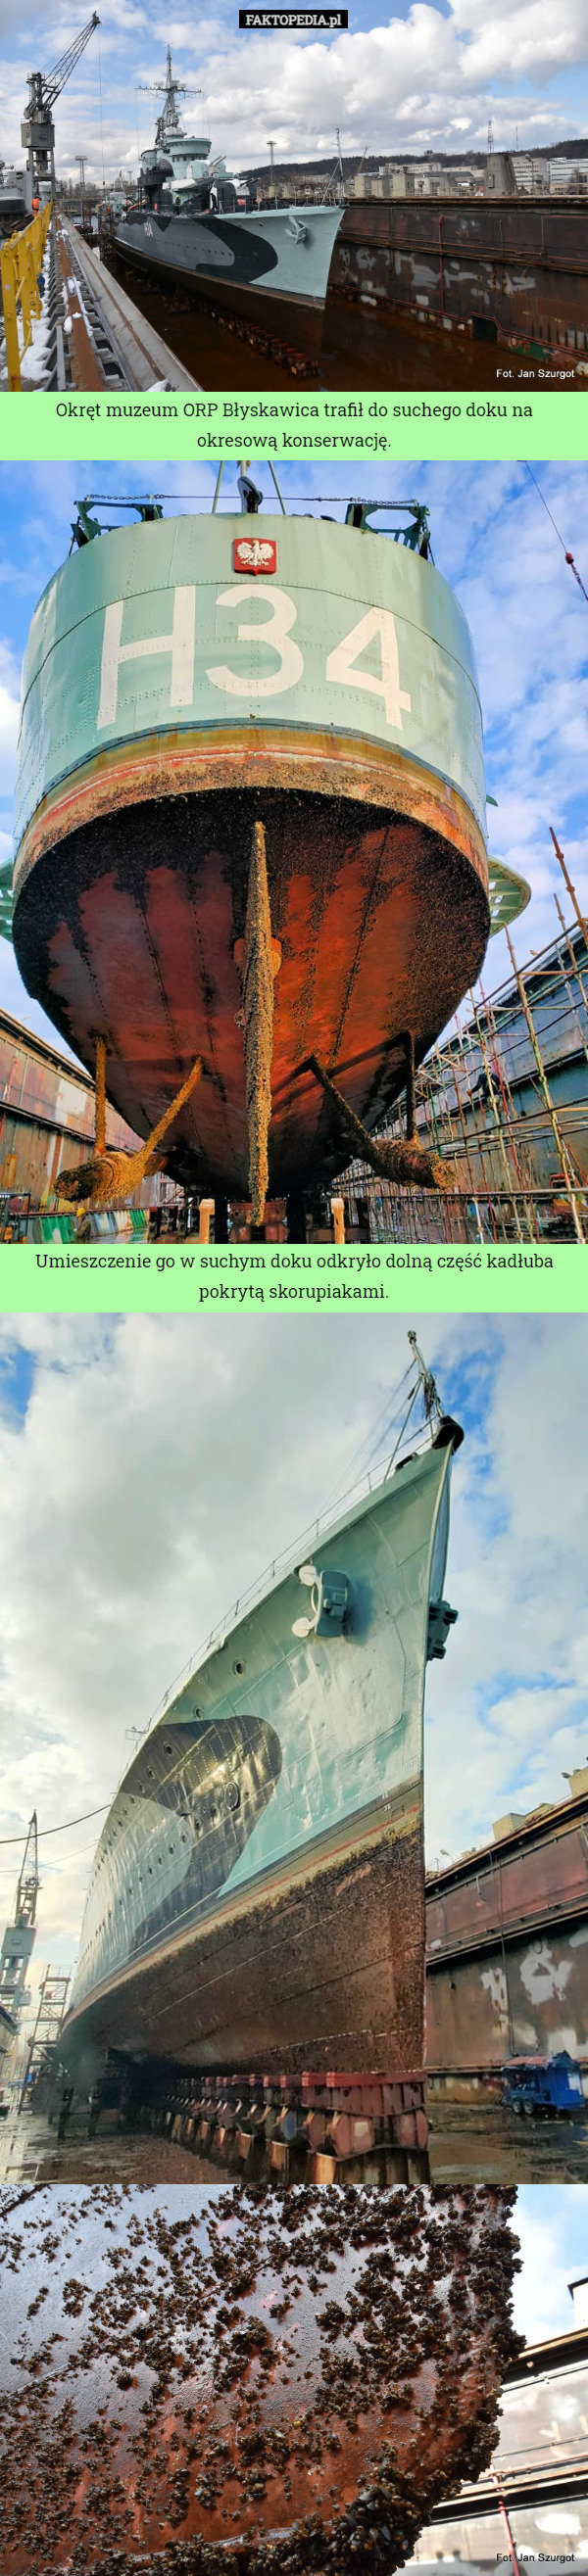 Okręt muzeum ORP Błyskawica trafił do suchego doku na okresową konserwację. Umieszczenie go w suchym doku odkryło dolną część kadłuba pokrytą skorupiakami. 